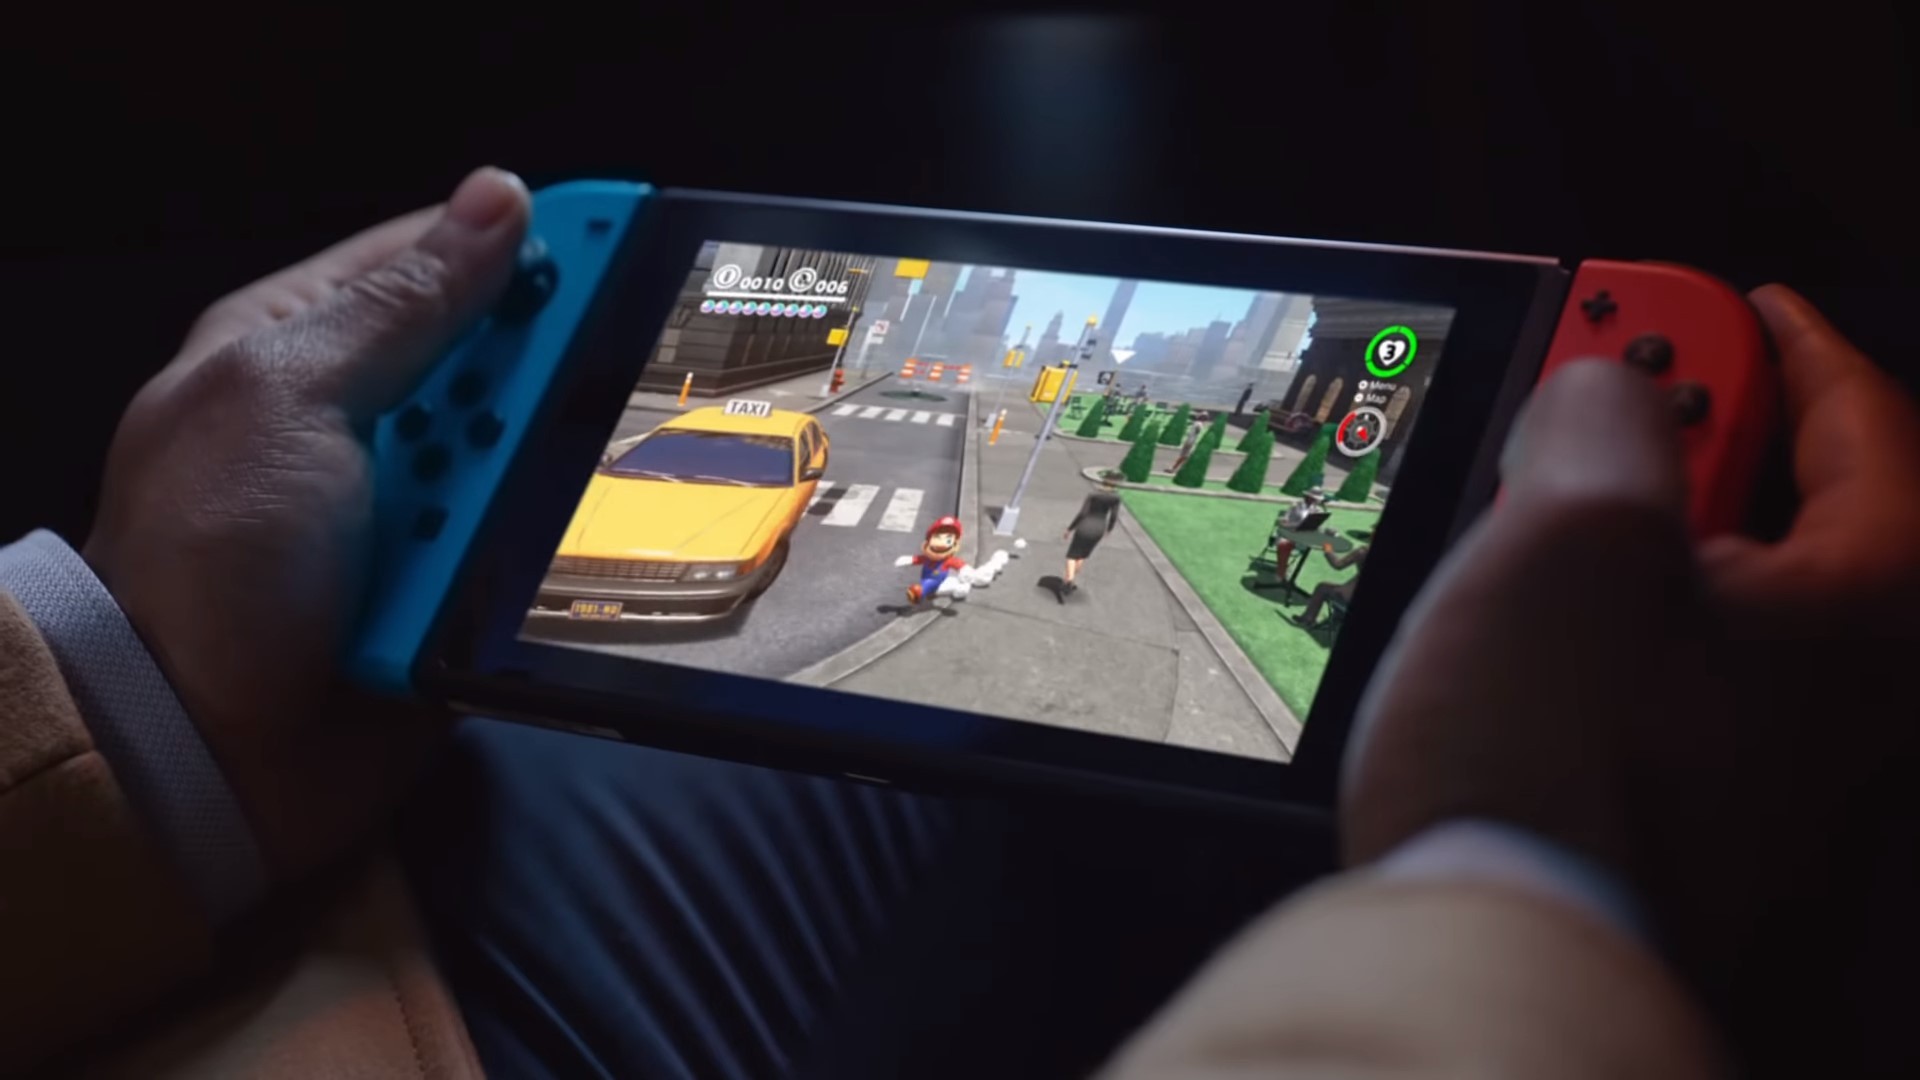 Ofertas Mercado Livre  Jogos da Nintendo para o Switch ganham novos cupons  de desconto